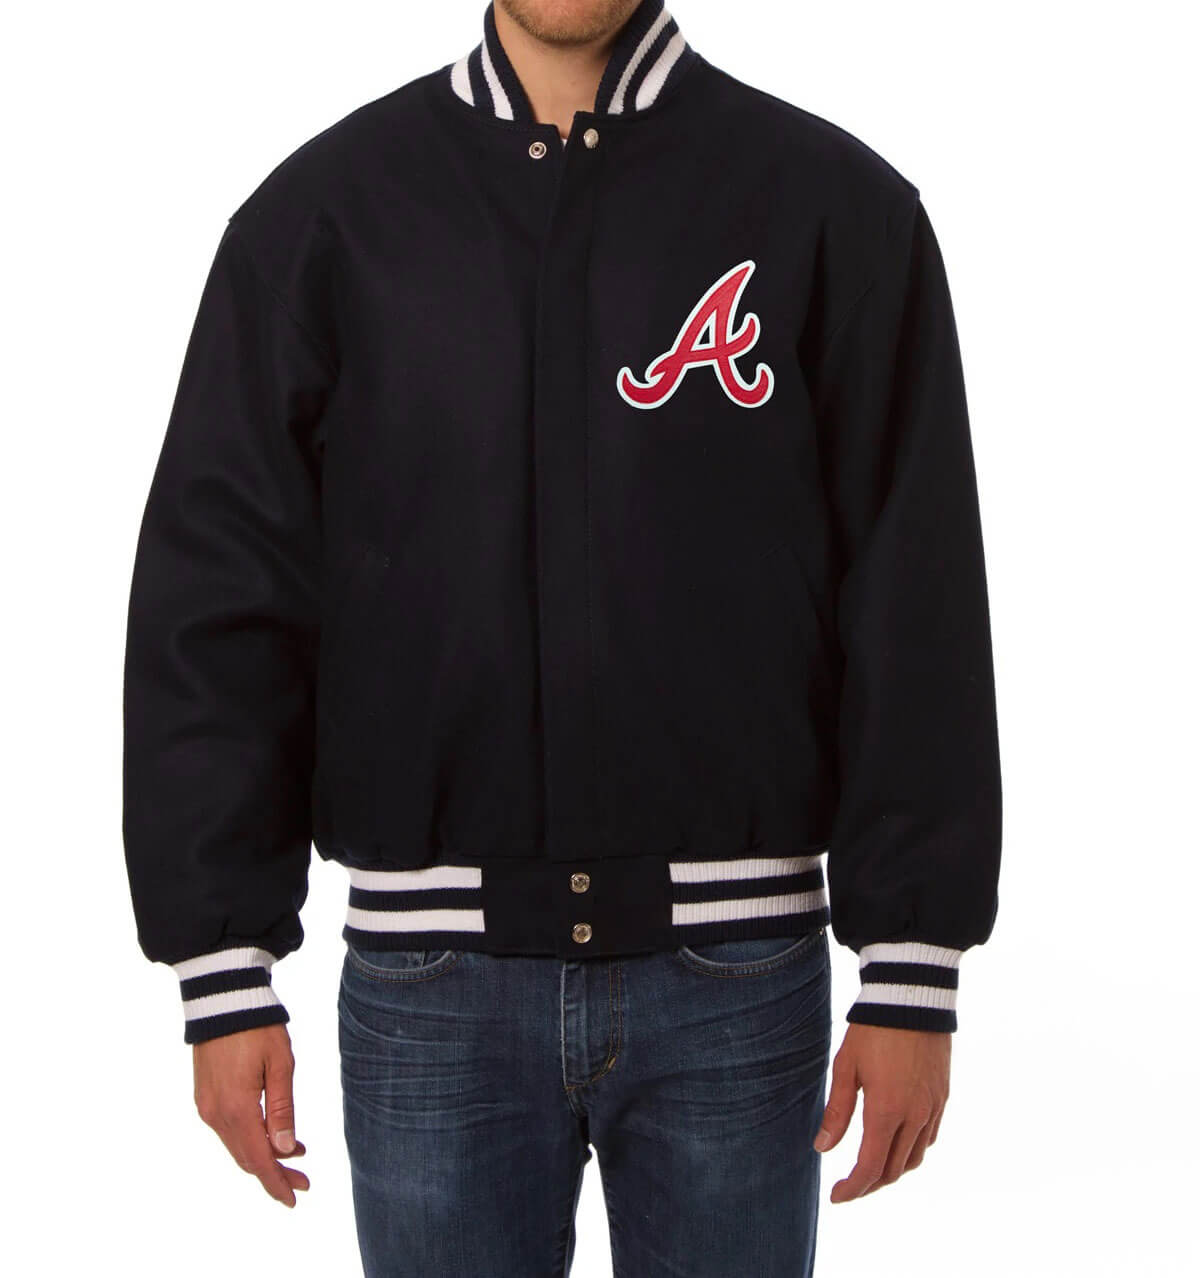 Navy MLB Atlanta Braves Varsity Jacket - Maker of Jacket